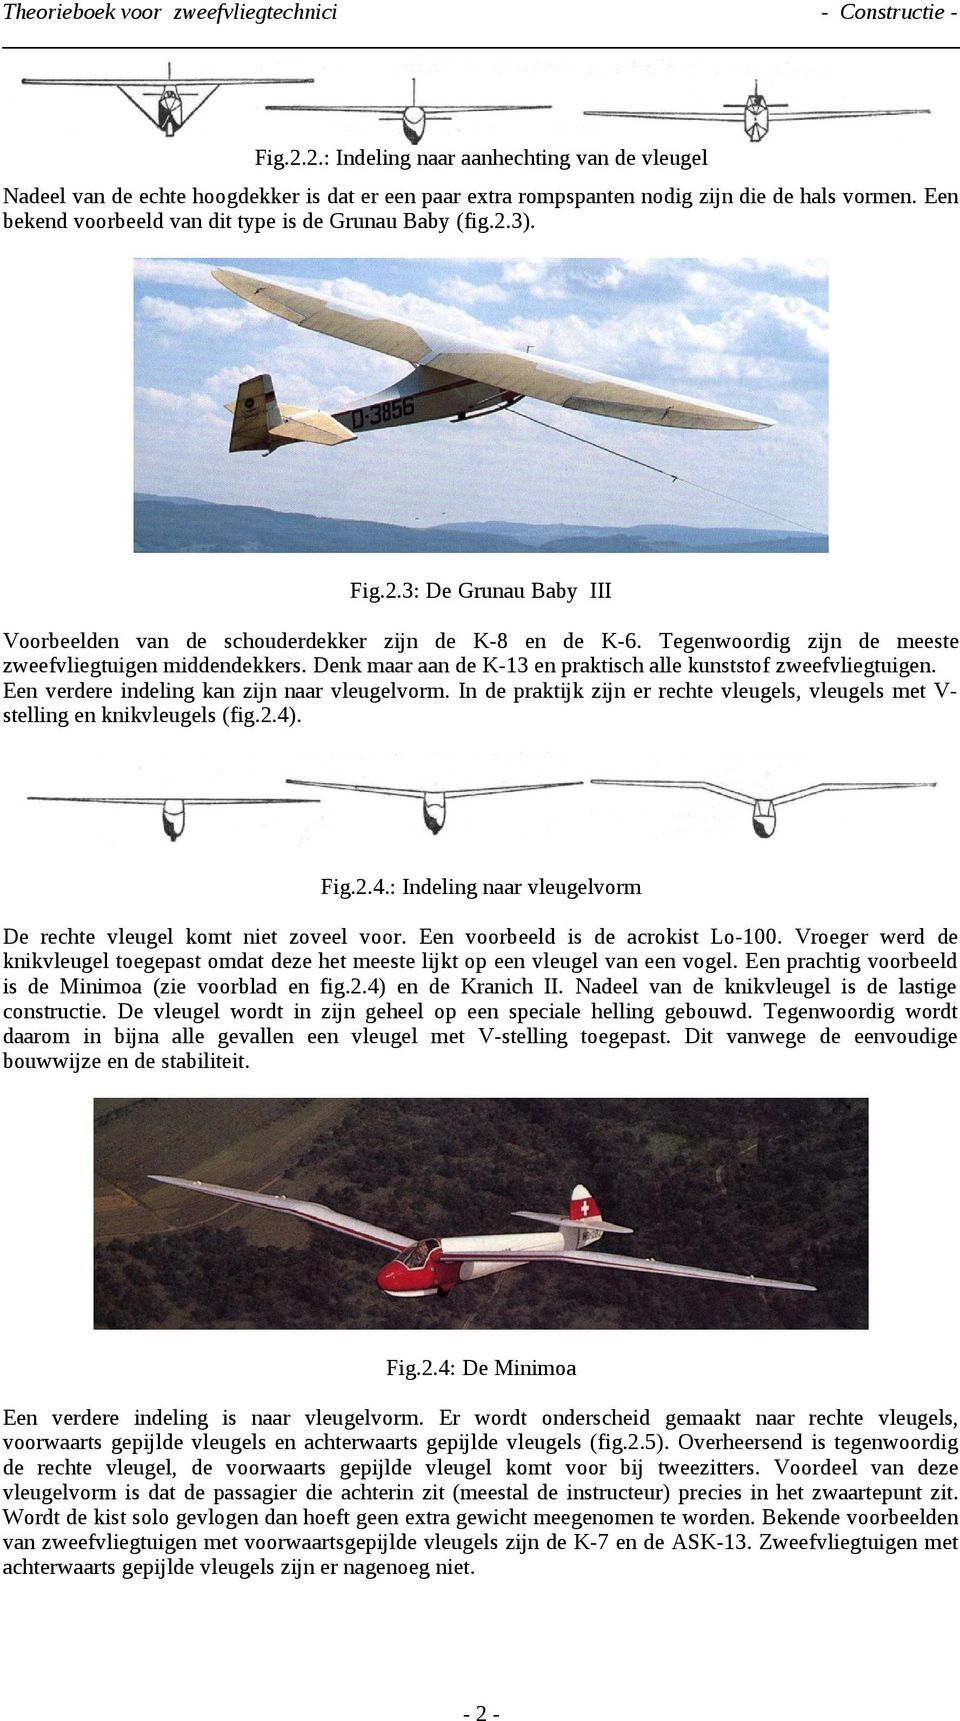 Tegenwoordig zijn de meeste zweefvliegtuigen middendekkers. Denk maar aan de K-13 en praktisch alle kunststof zweefvliegtuigen. Een verdere indeling kan zijn naar vleugelvorm.